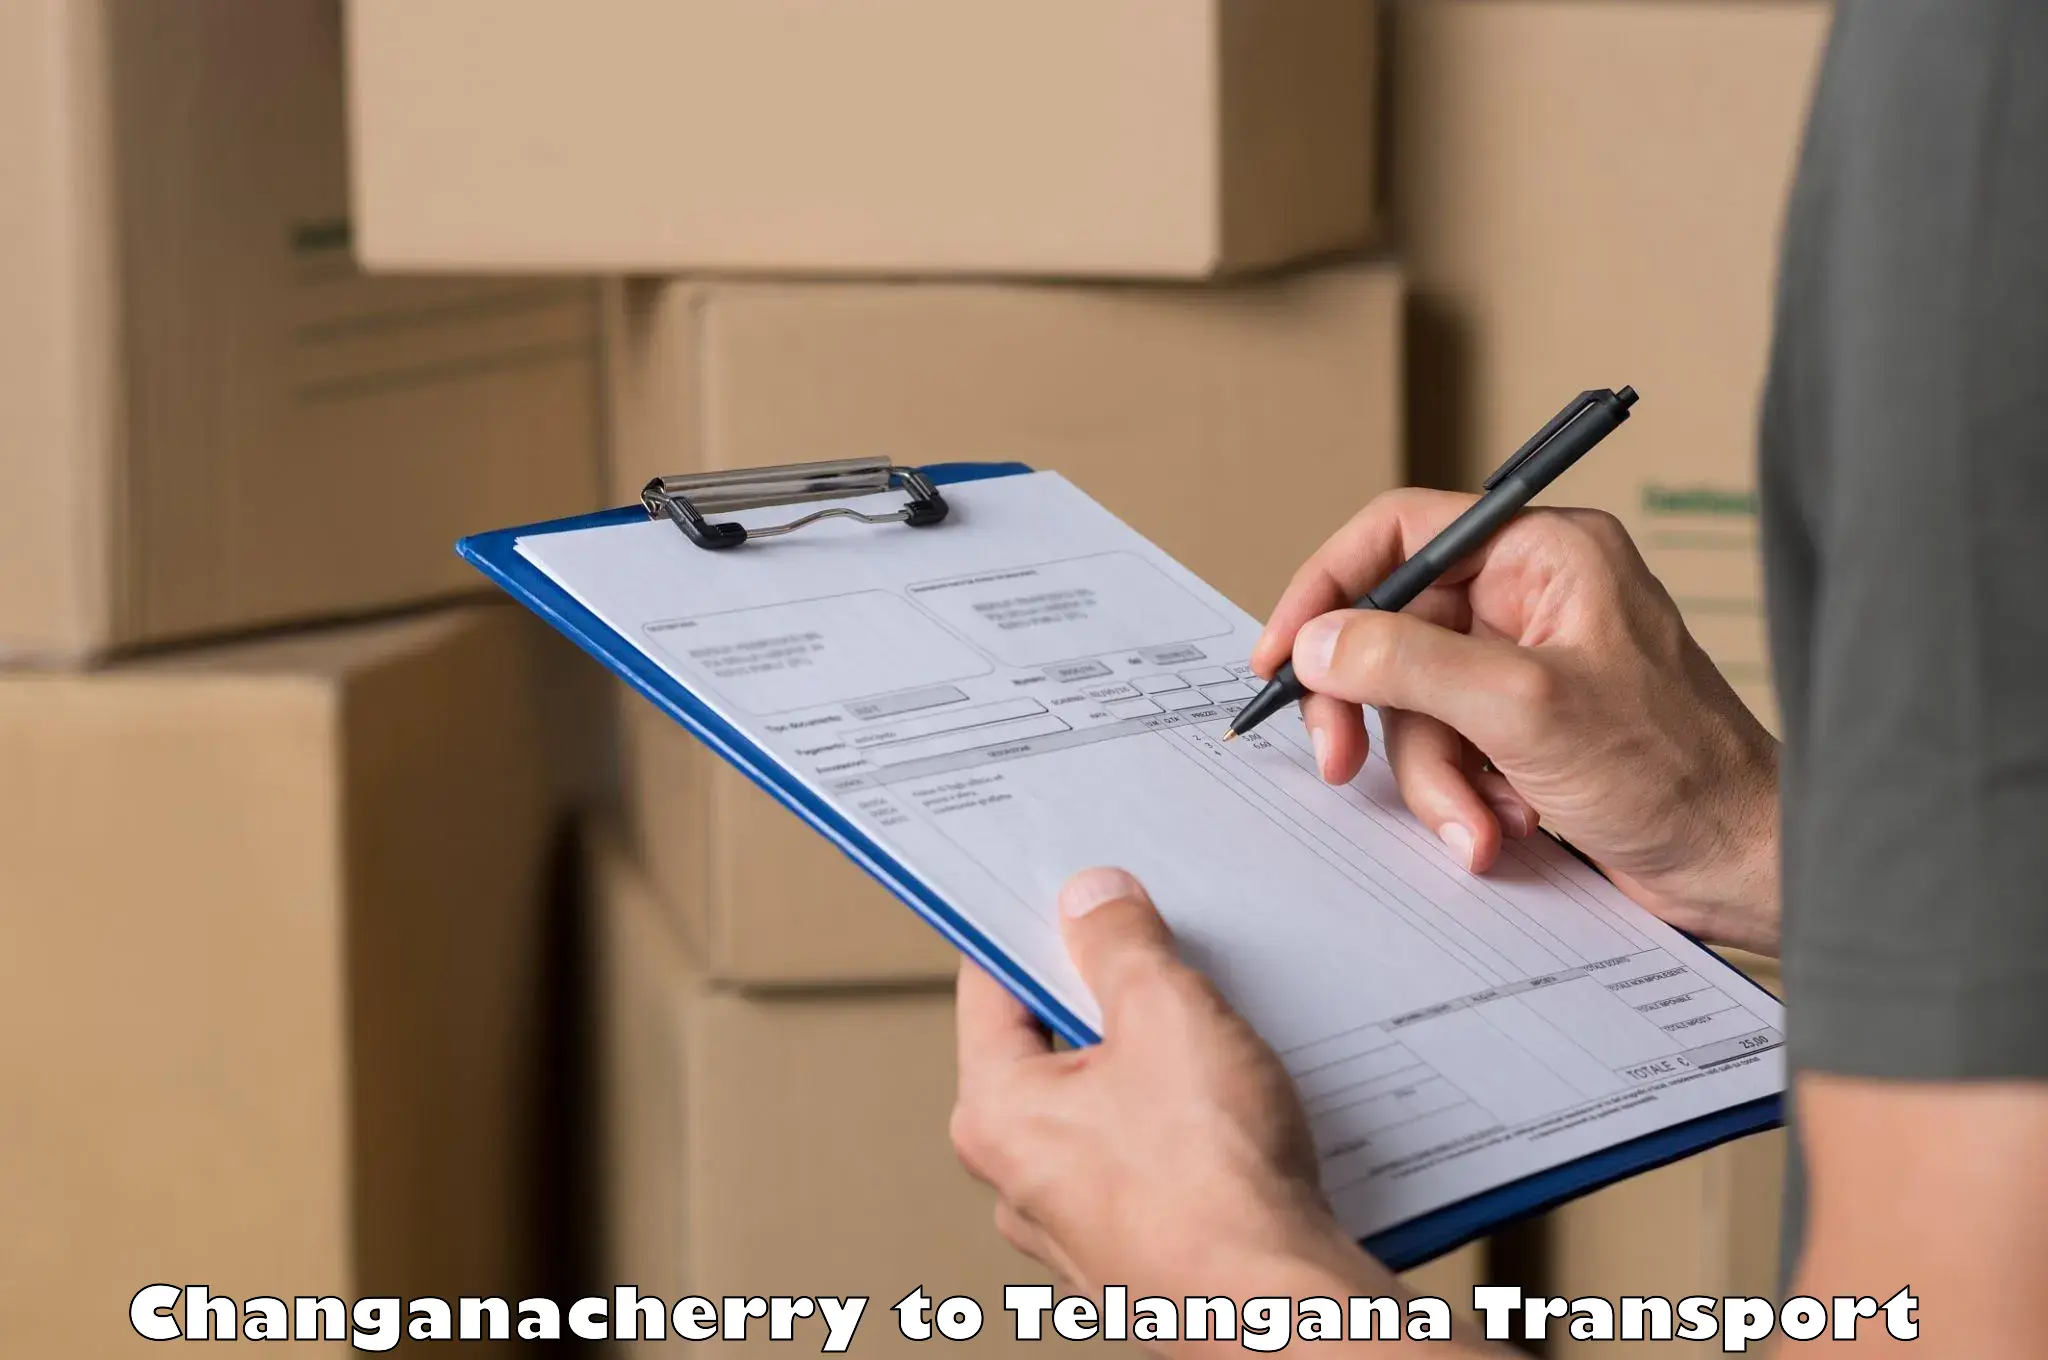 Container transport service Changanacherry to Bhadrachalam